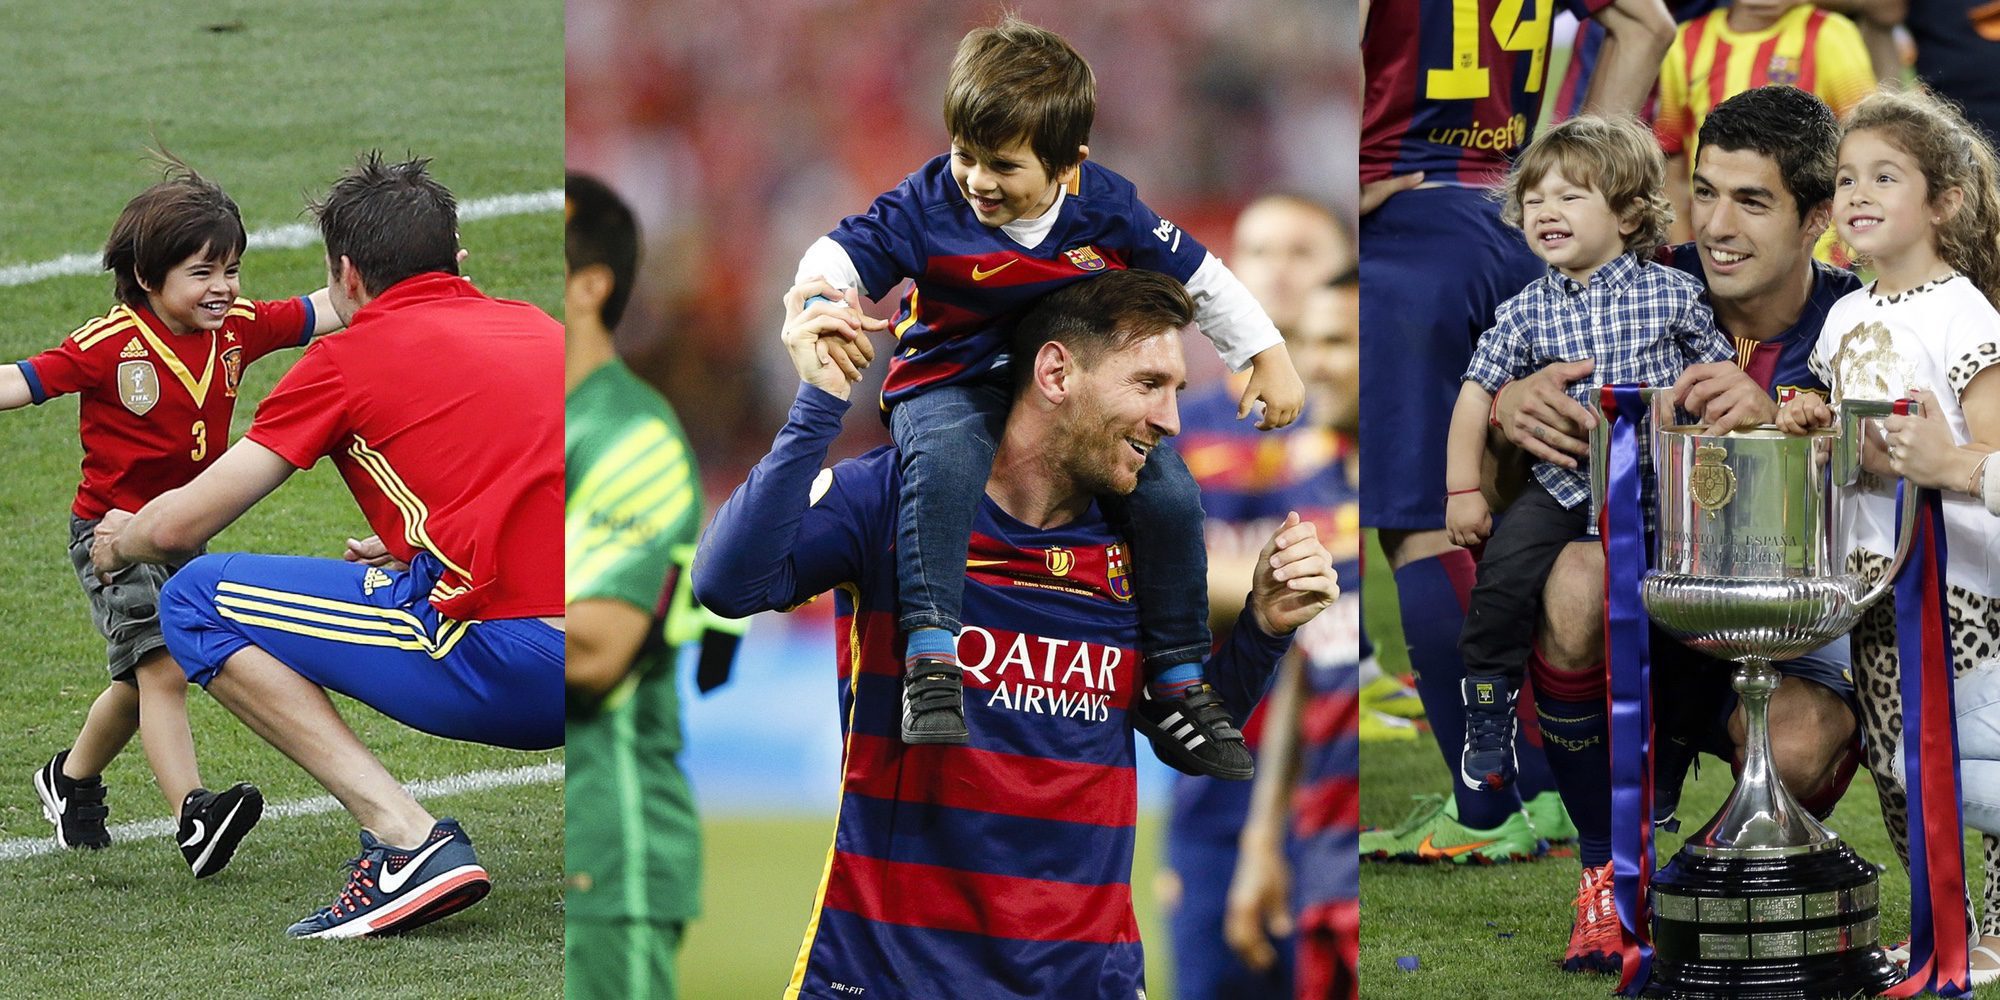 Los hijos Messi, Piqué y Suárez debutarán como futbolistas en la escuela del Barça